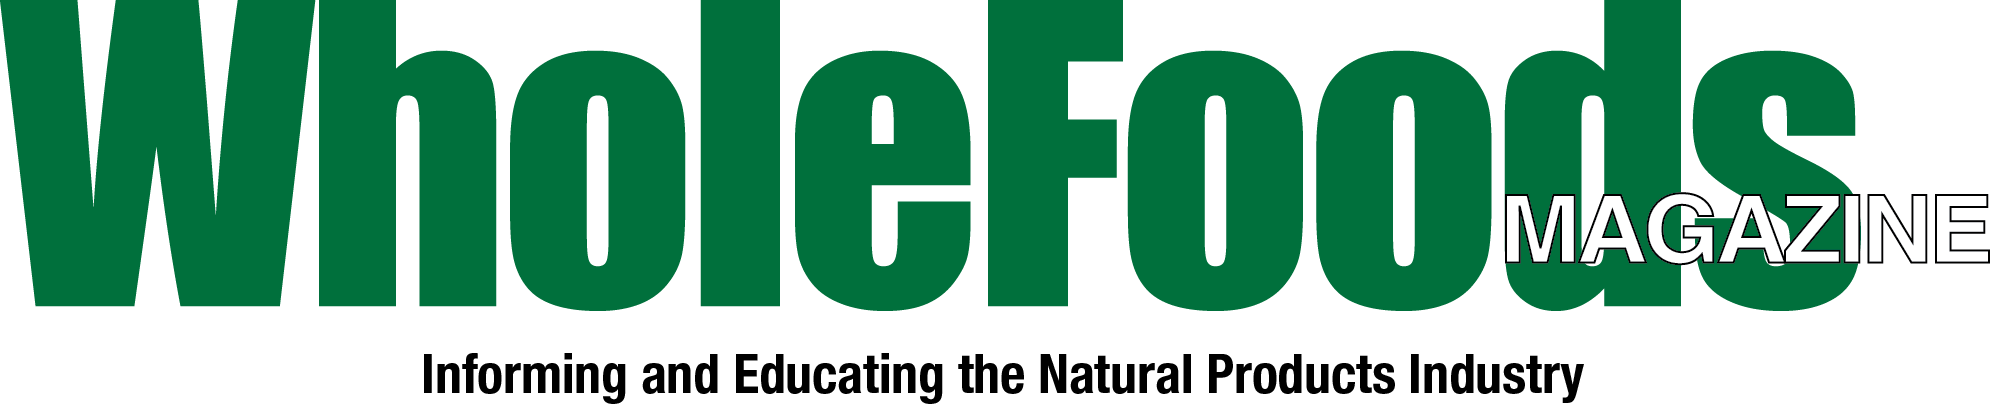 Whole Foods Magazine Logo PNG